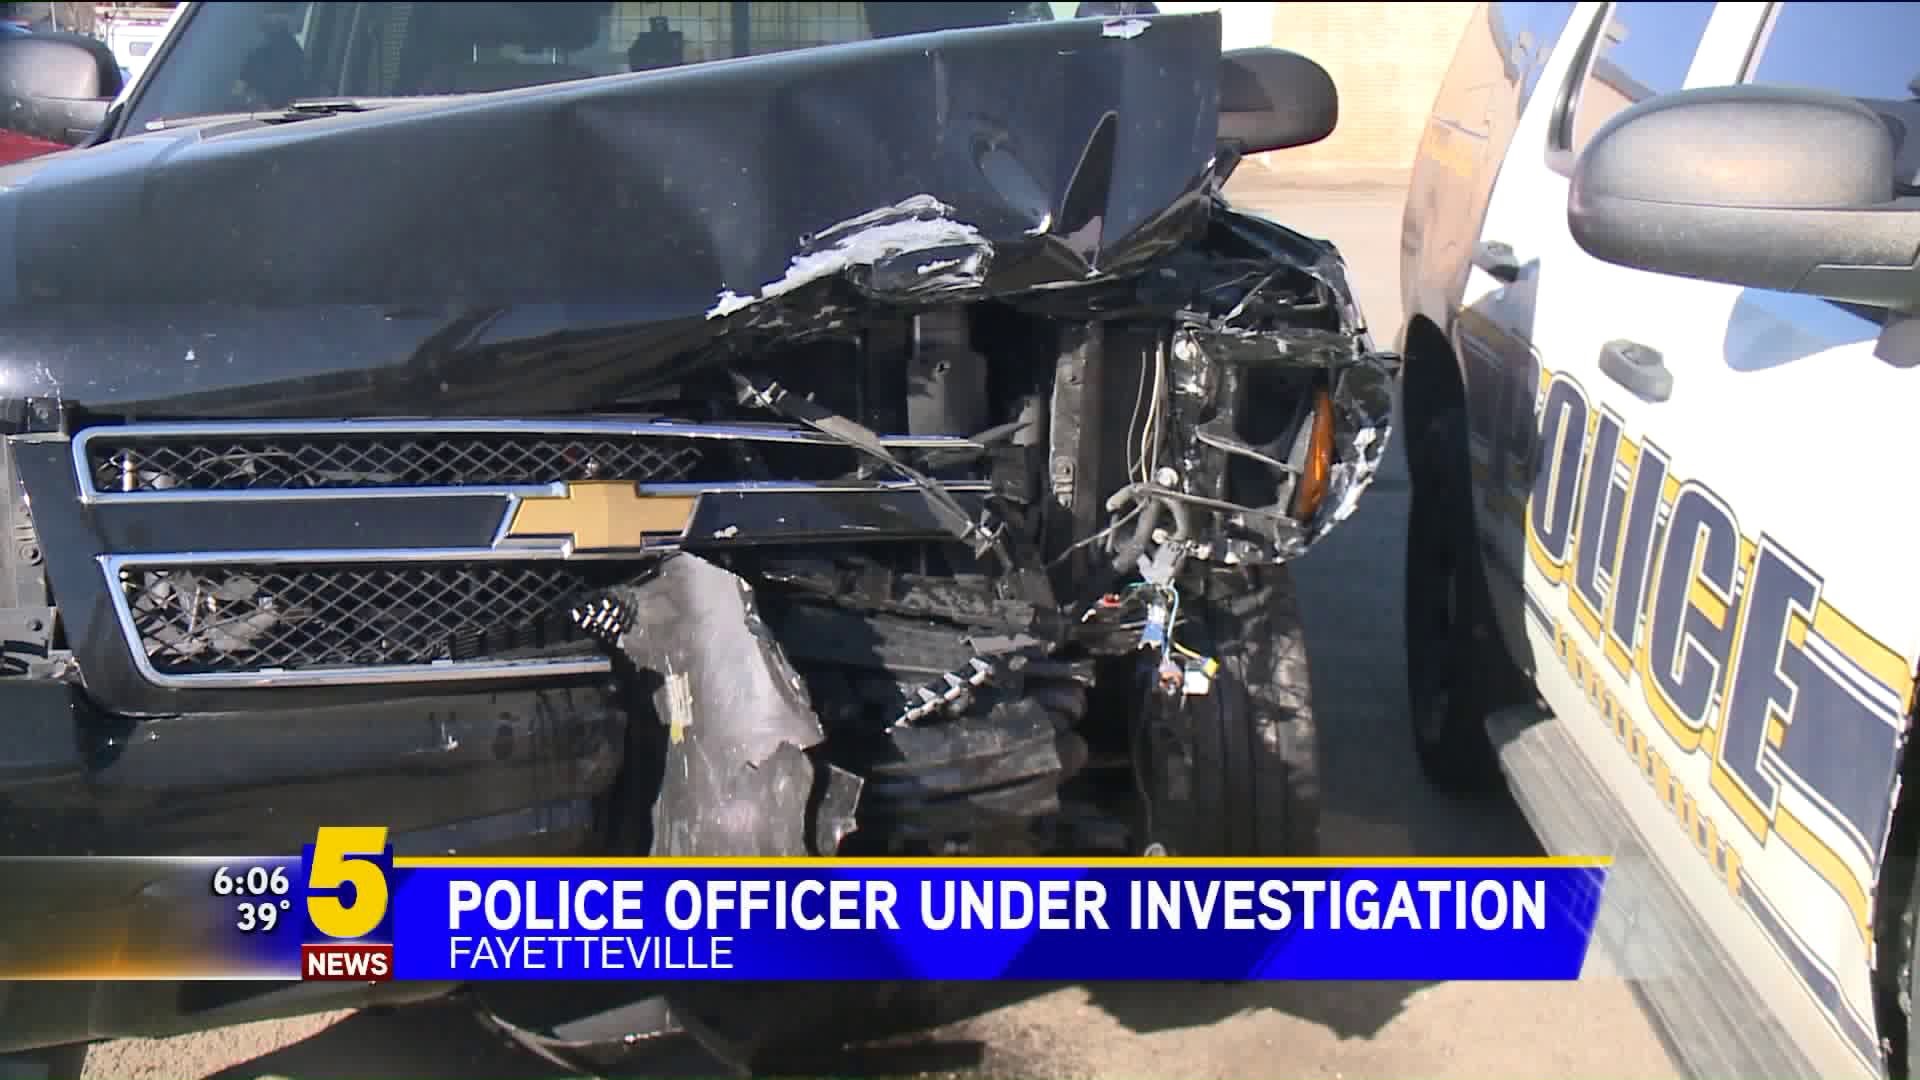 Police Officer Under Investigation